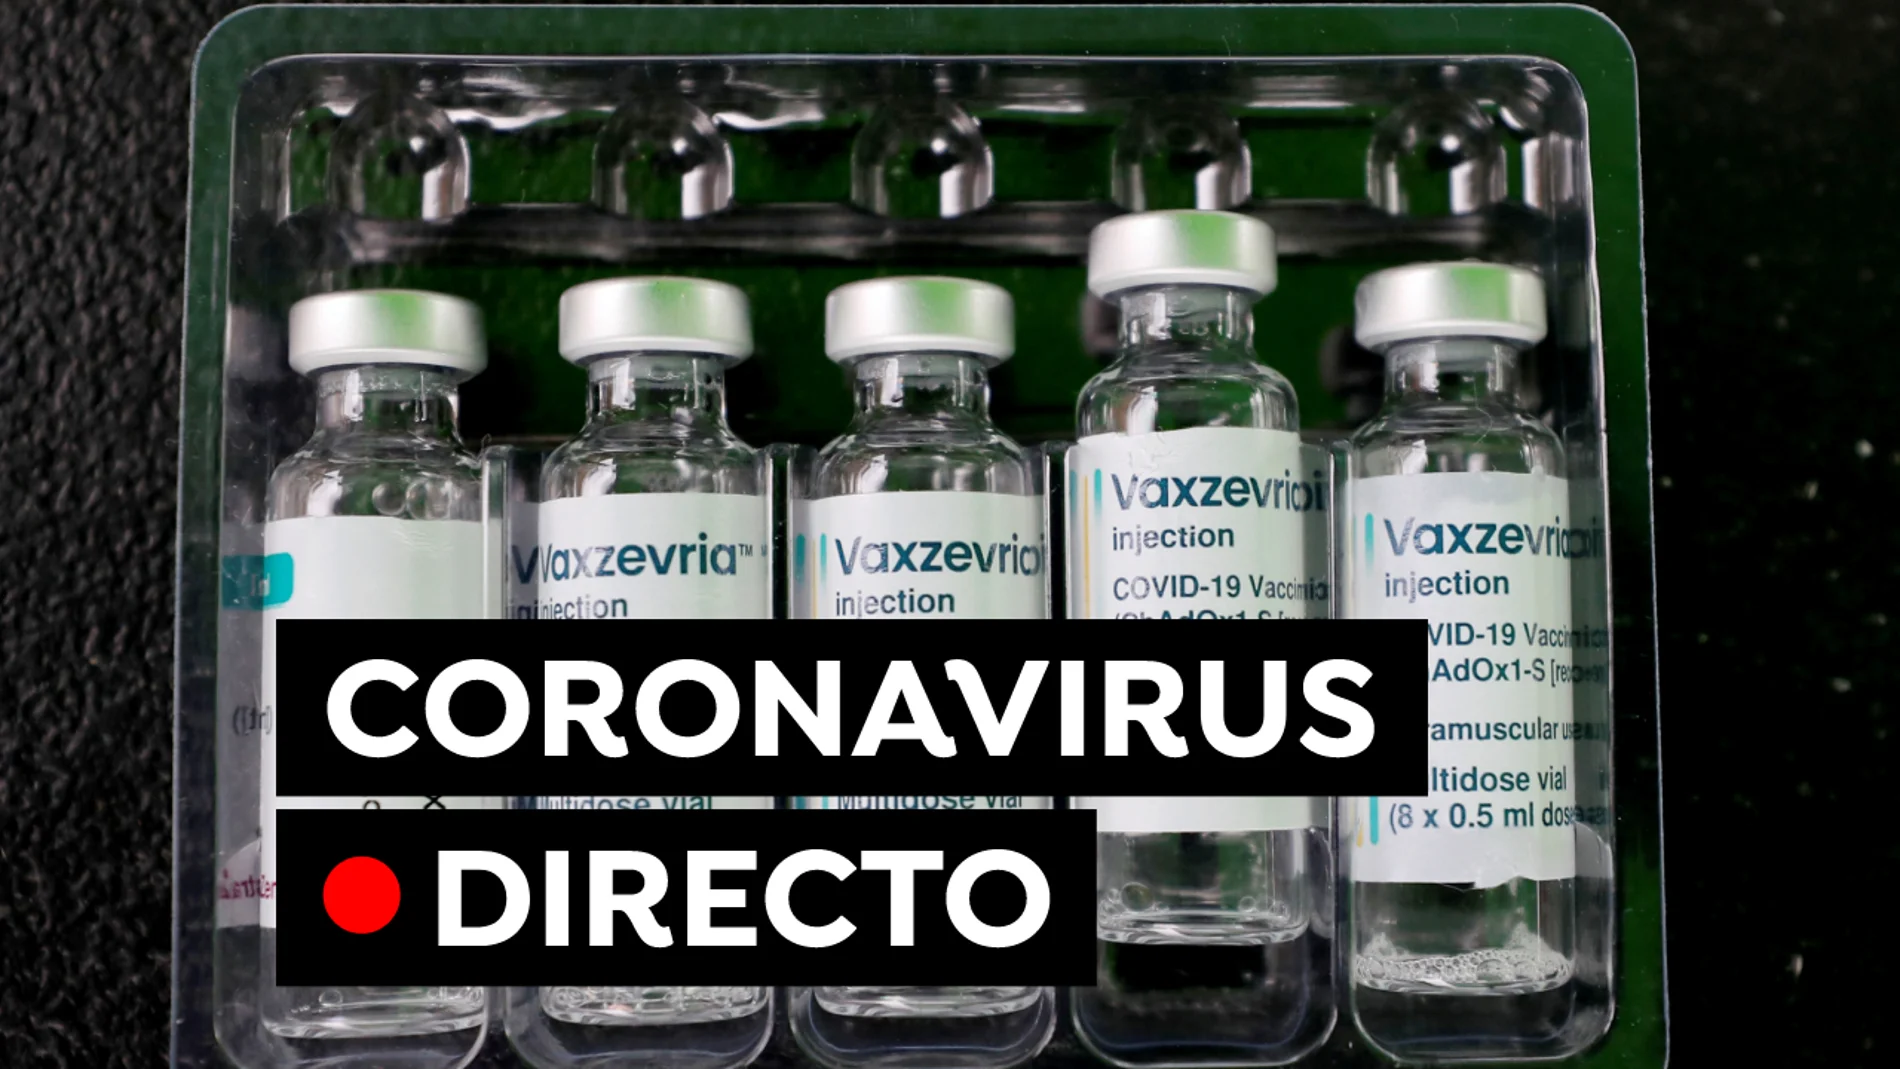 Coronavirus España: Datos de covid en Madrid, Cataluña, País Vasco hoy y vacuna contra el COVID-19, en directo